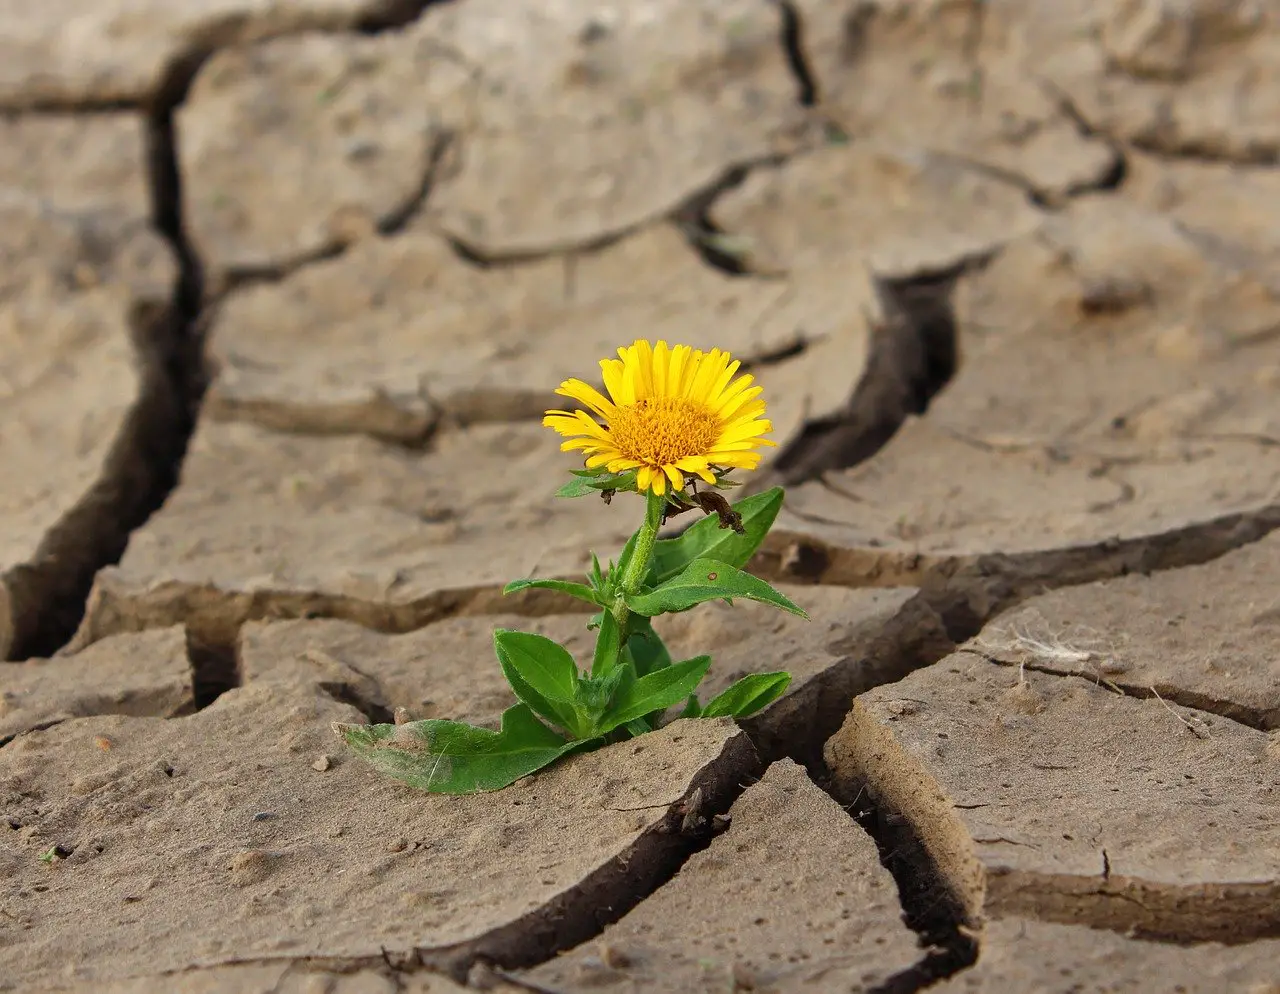 Resiliencia. Cómo vencer la adversidad y aprender a sobreponerse